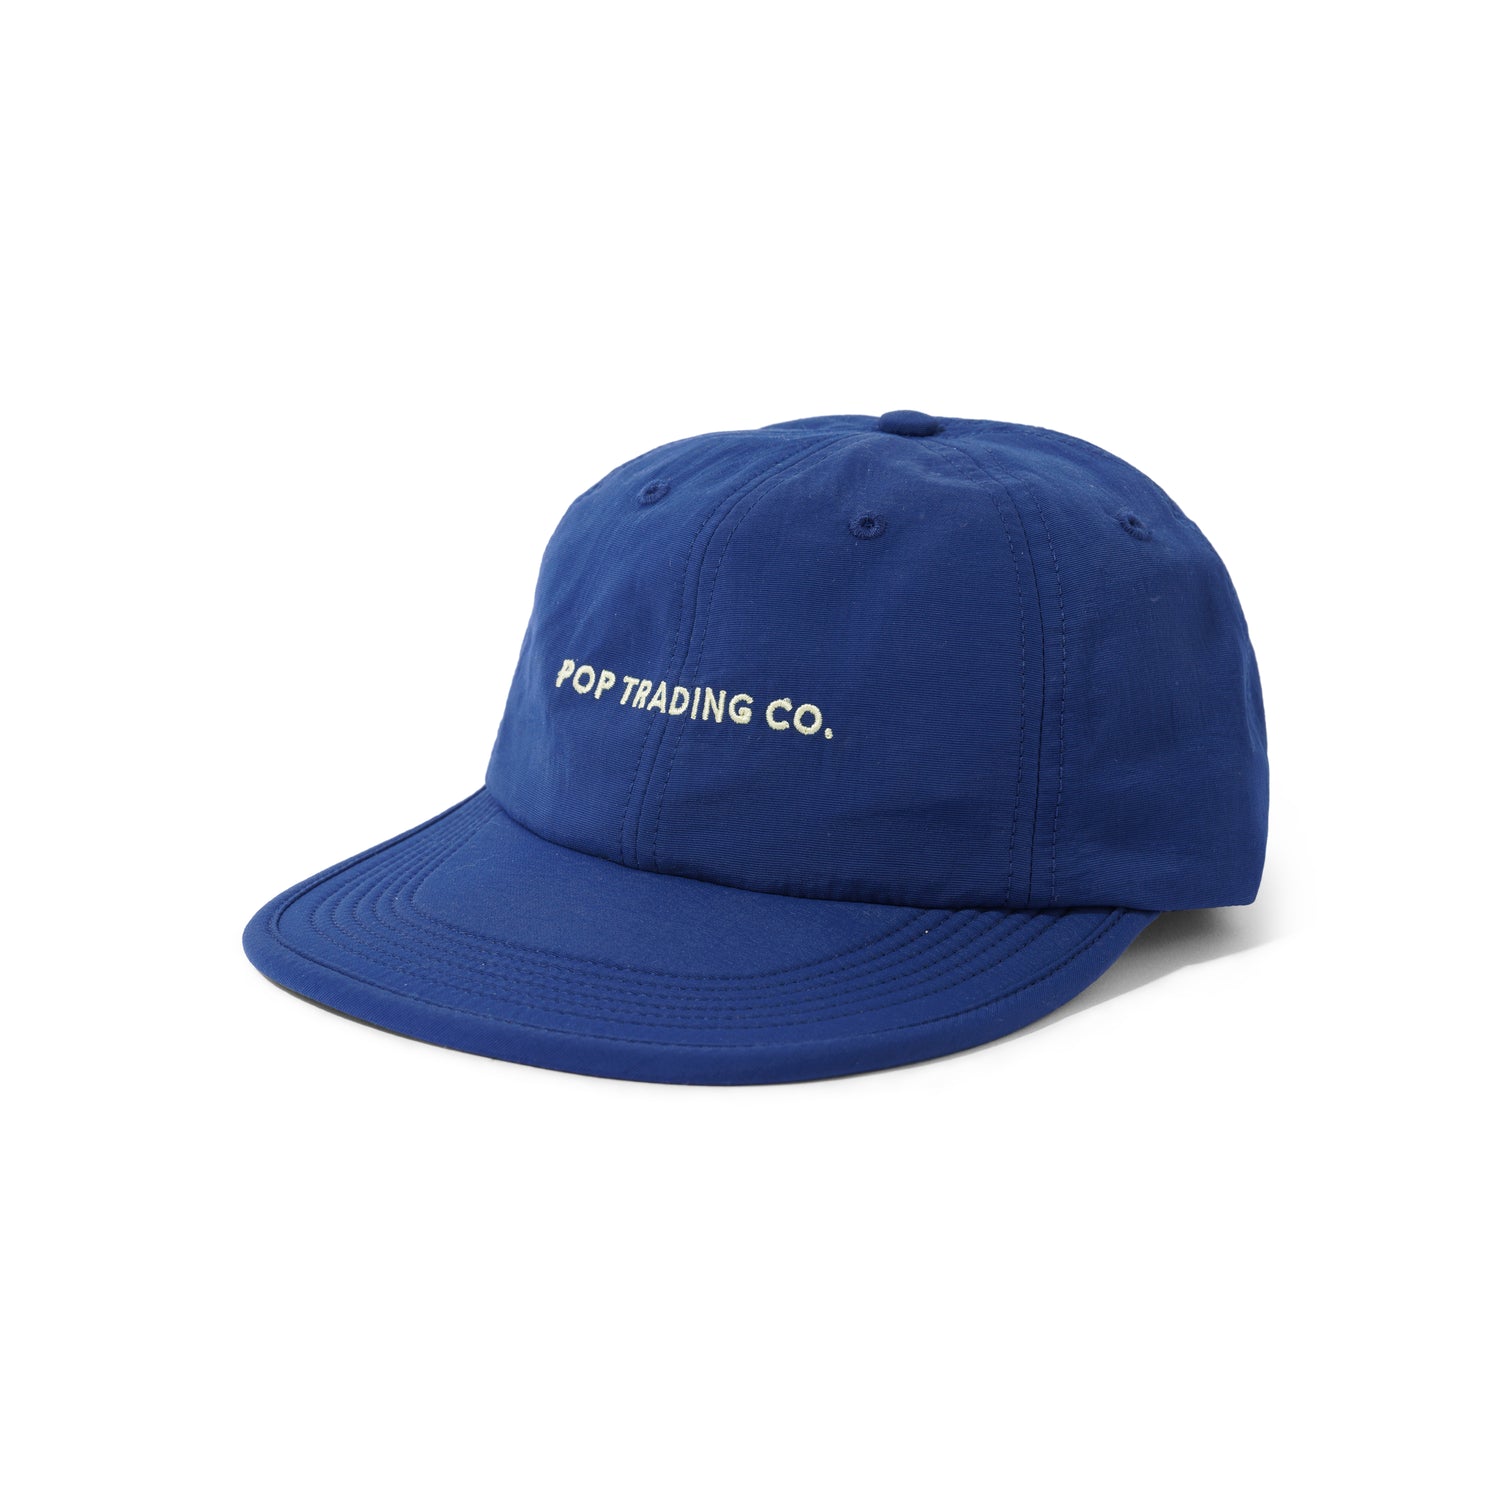 Flexfoam Seersucker Sixpanel Hat, Navy / Snapdragon